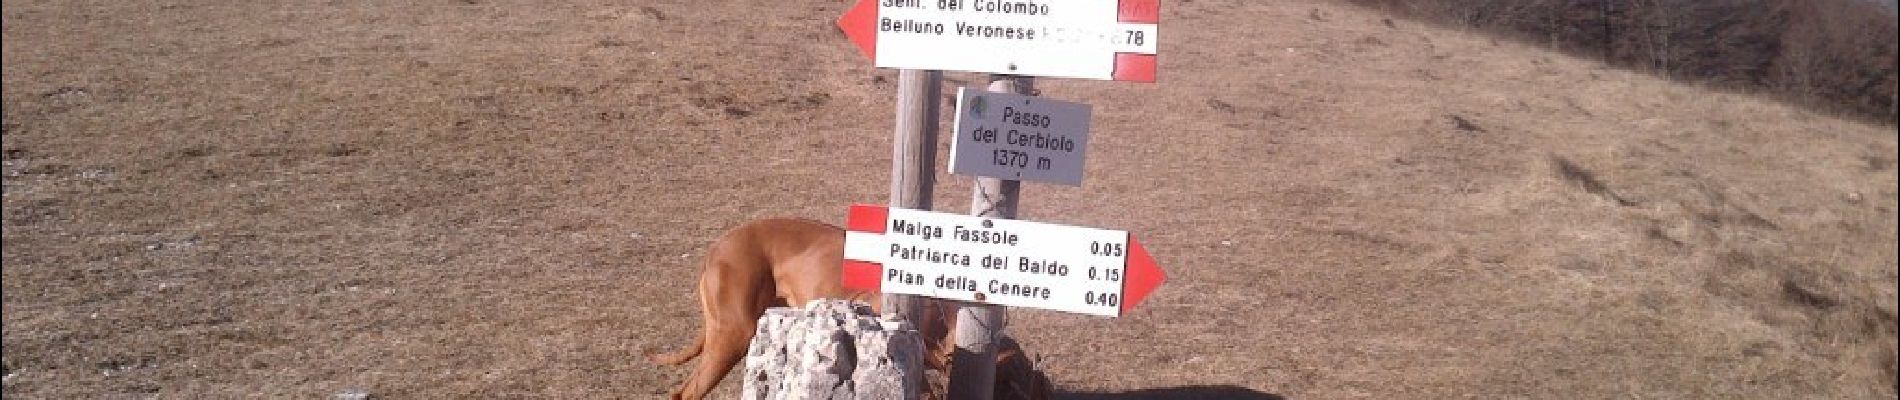 Tour Zu Fuß Brentino Belluno - Belluno Veronese - Passo del Cerbiolo - Photo